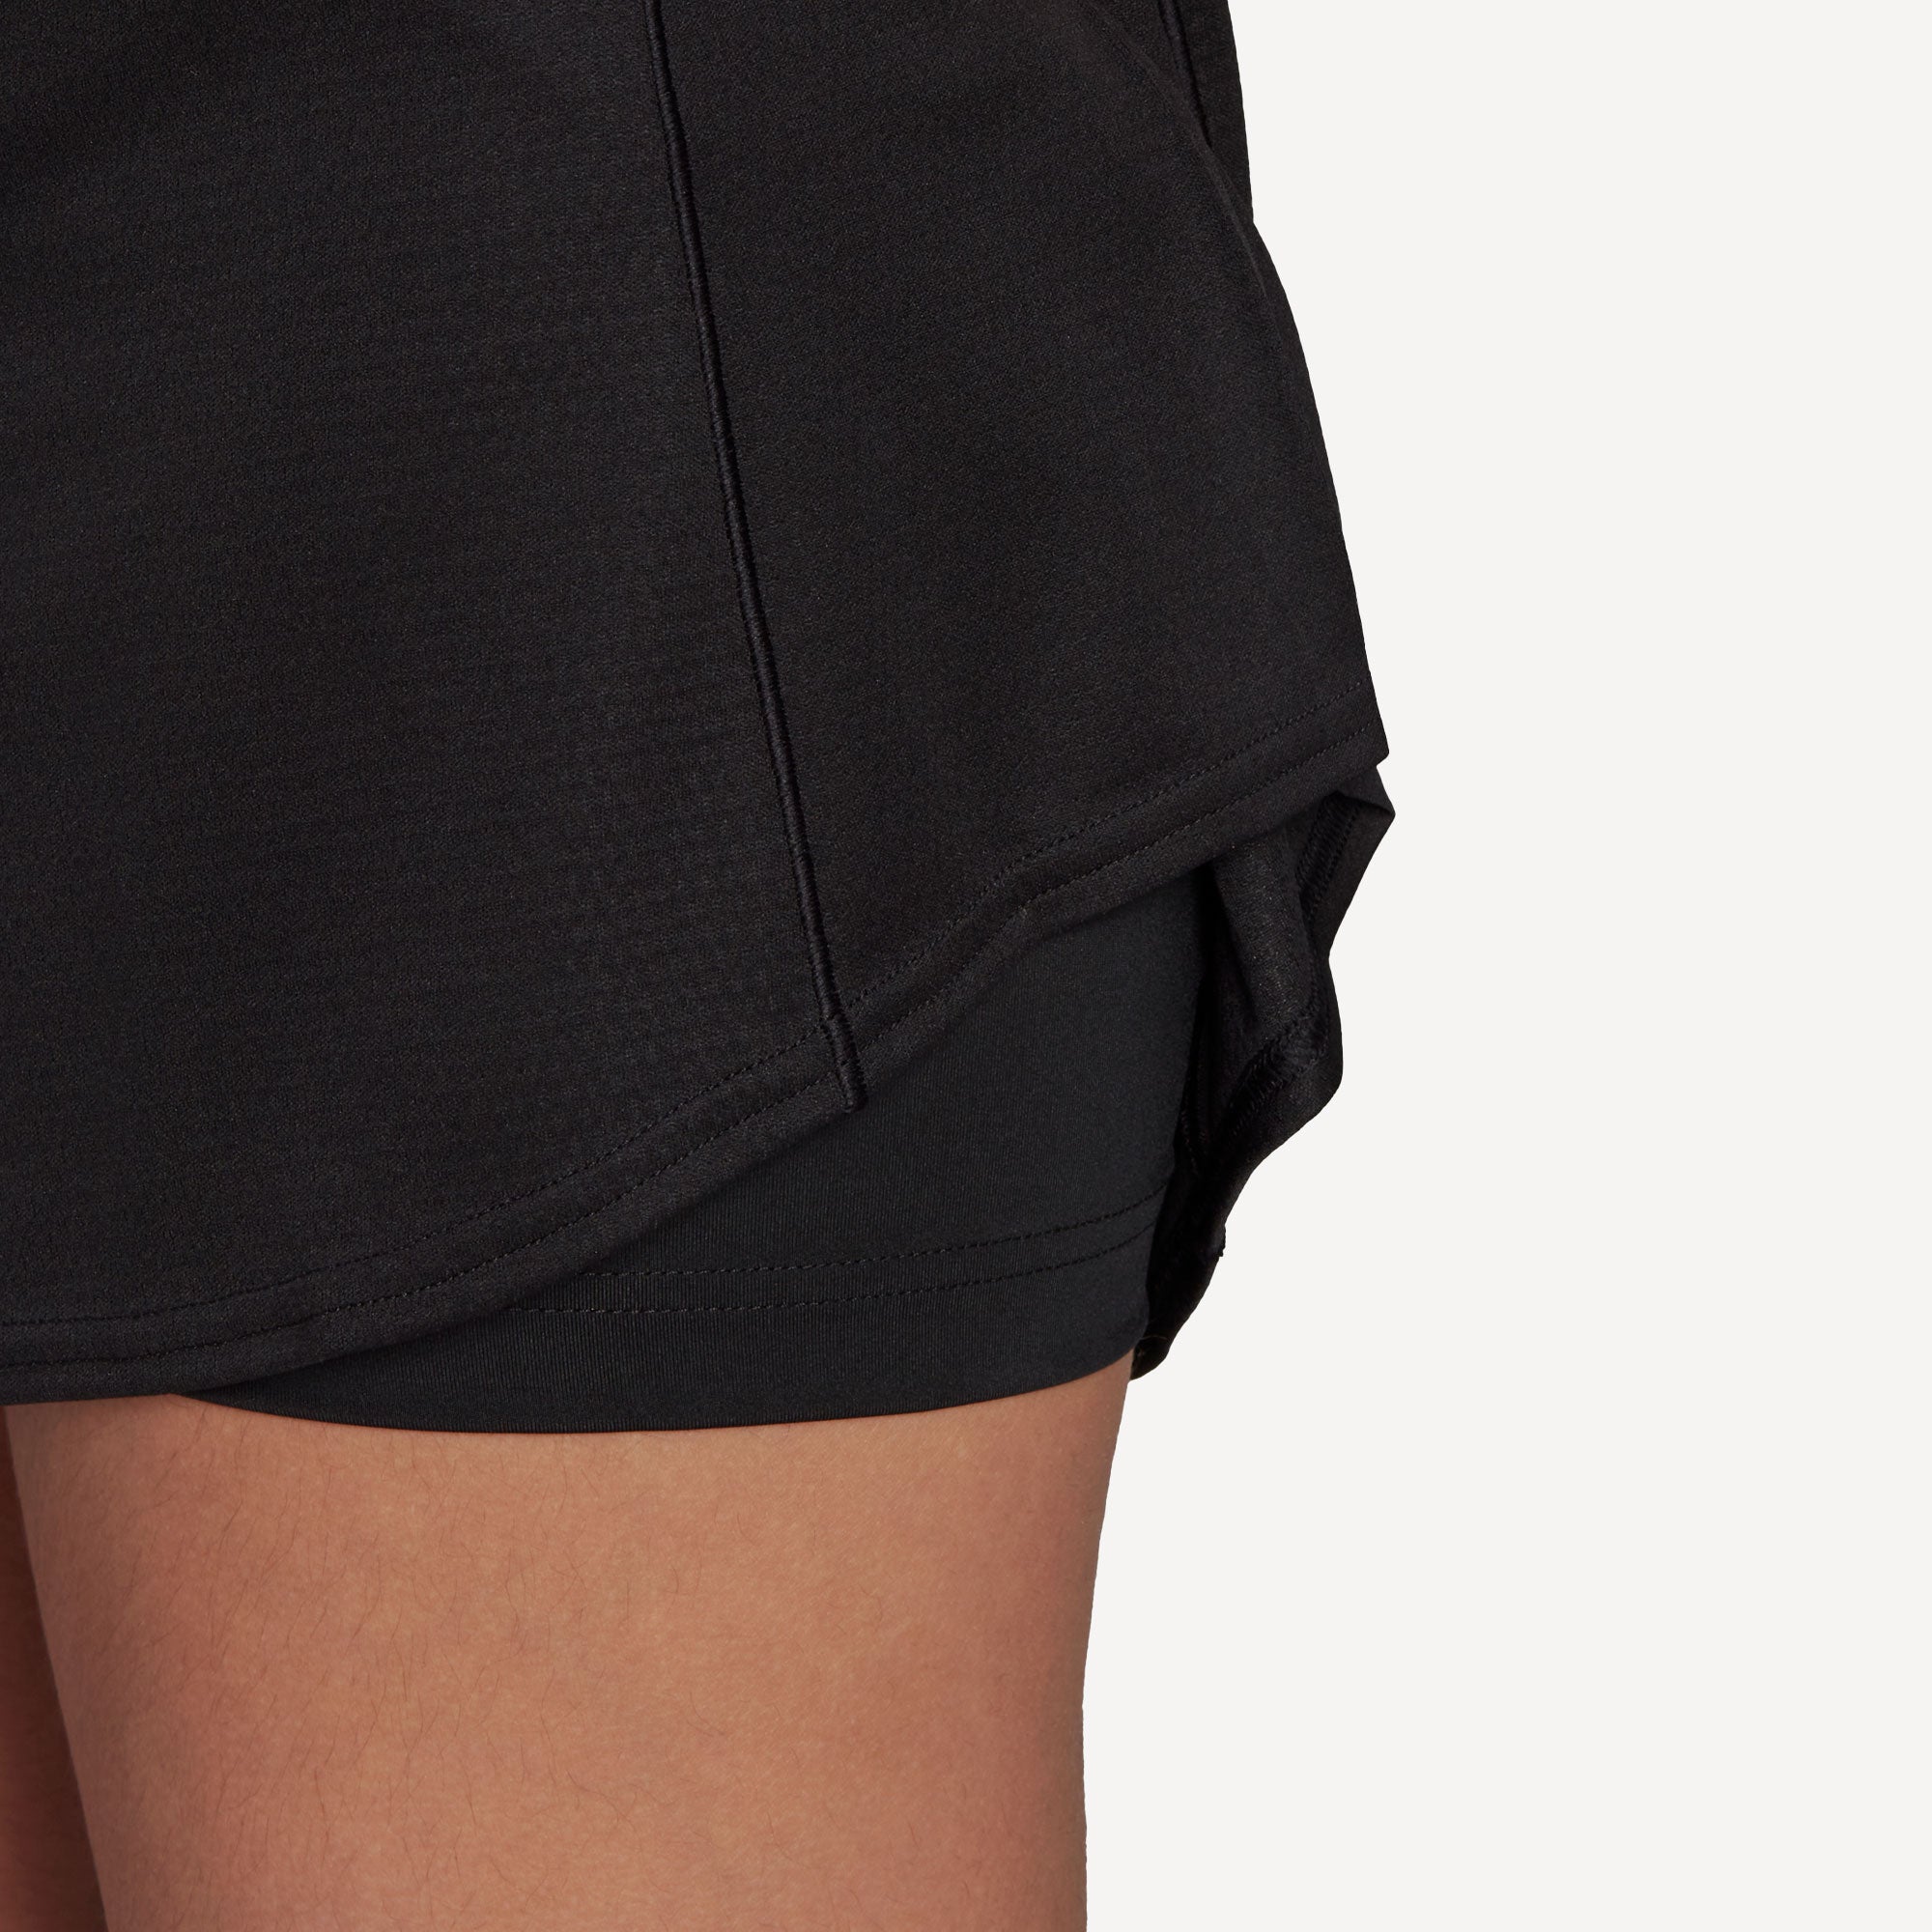 adidas Match Women's Tennis Skirt Black (7)